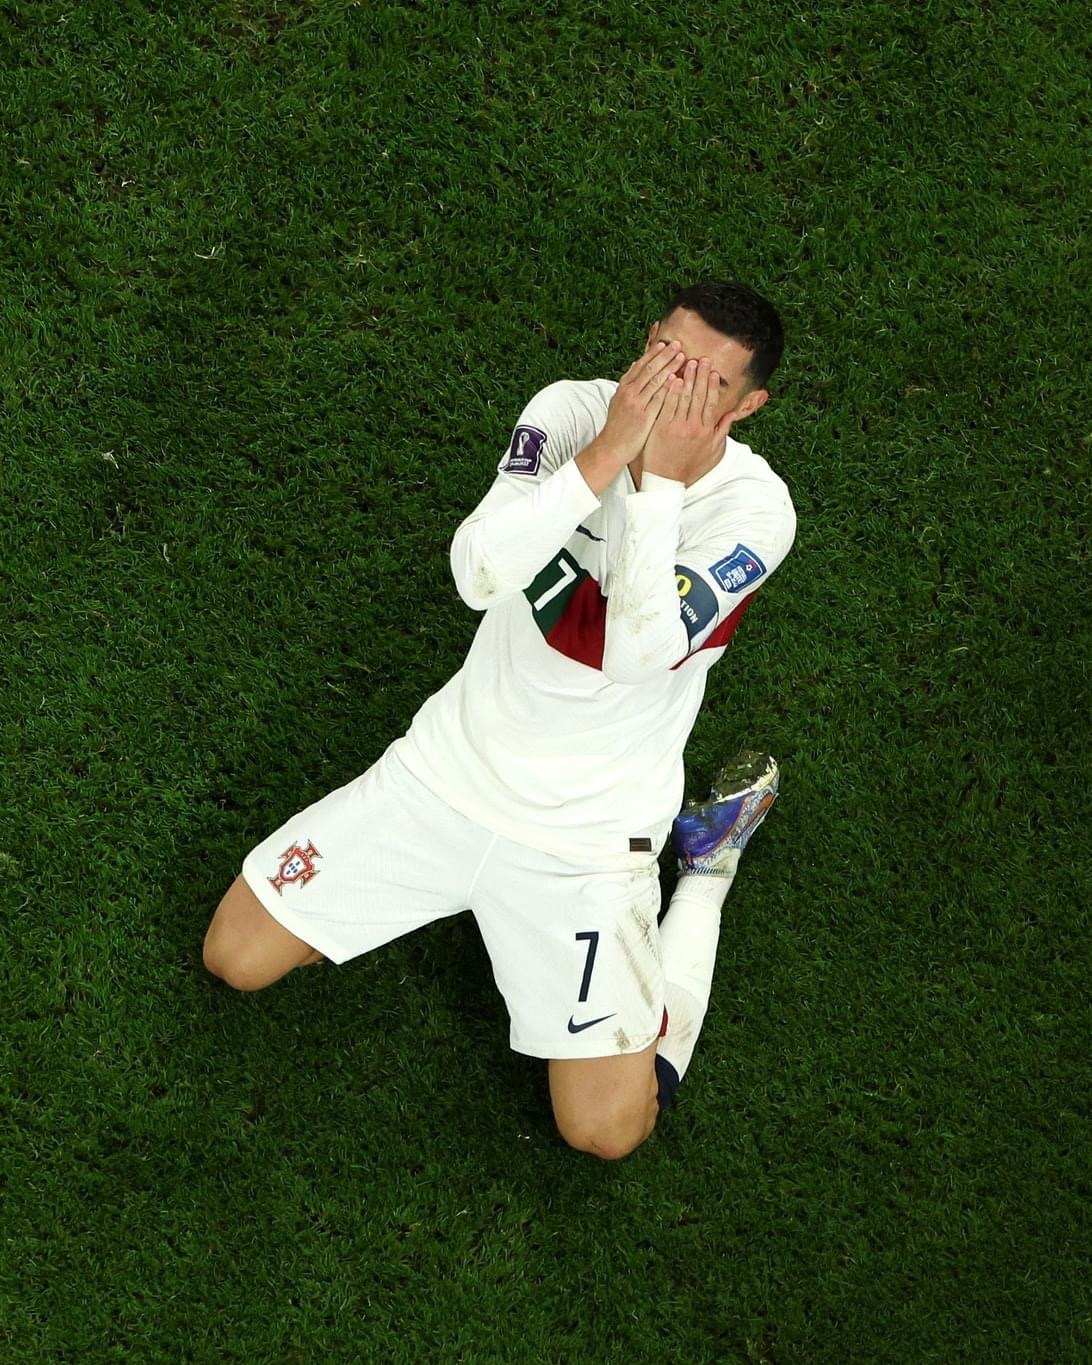 Xem ảnh Ronaldo khóc sau trận đấu tại World Cup giúp bạn hiểu hơn về tinh thần chiến đấu và sự vượt lên trên khó khăn của một người chơi bóng chuyên nghiệp.